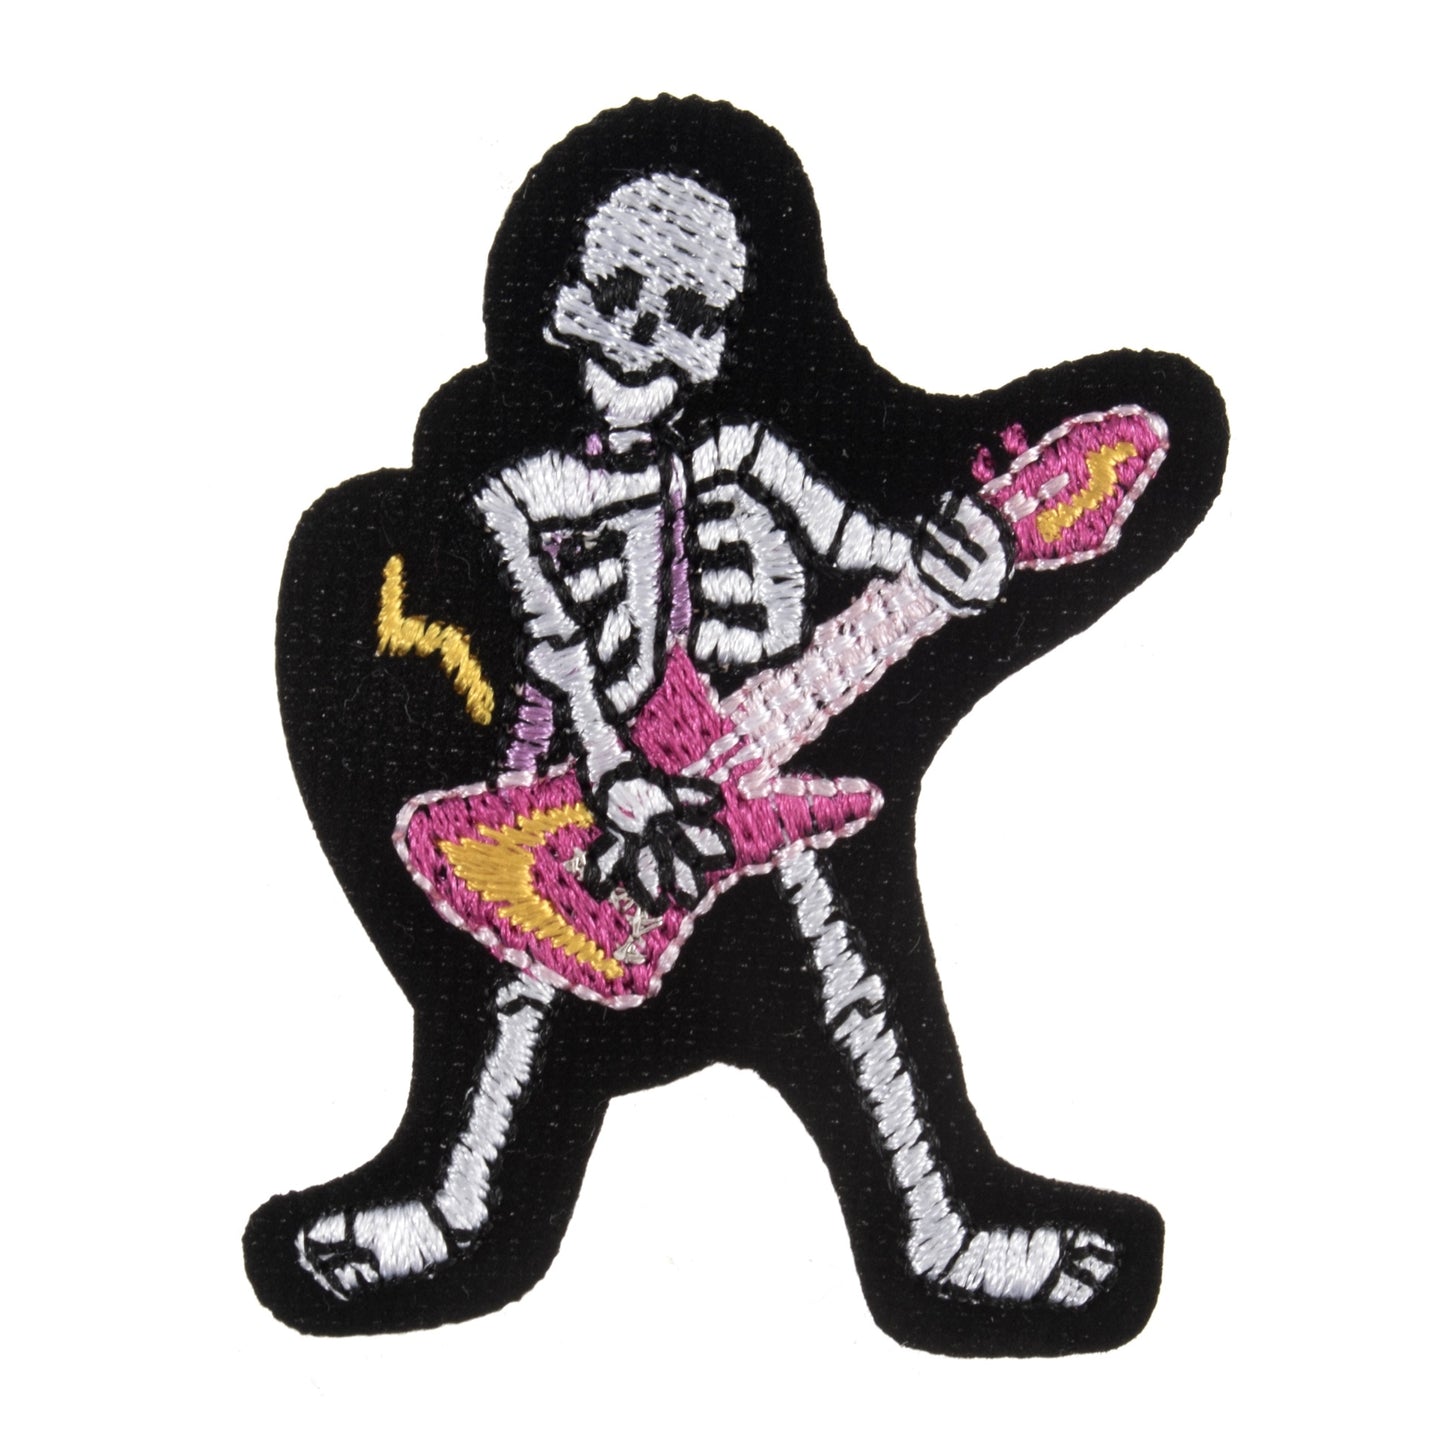 IRON ON MOTIF - Skeleton Guitar